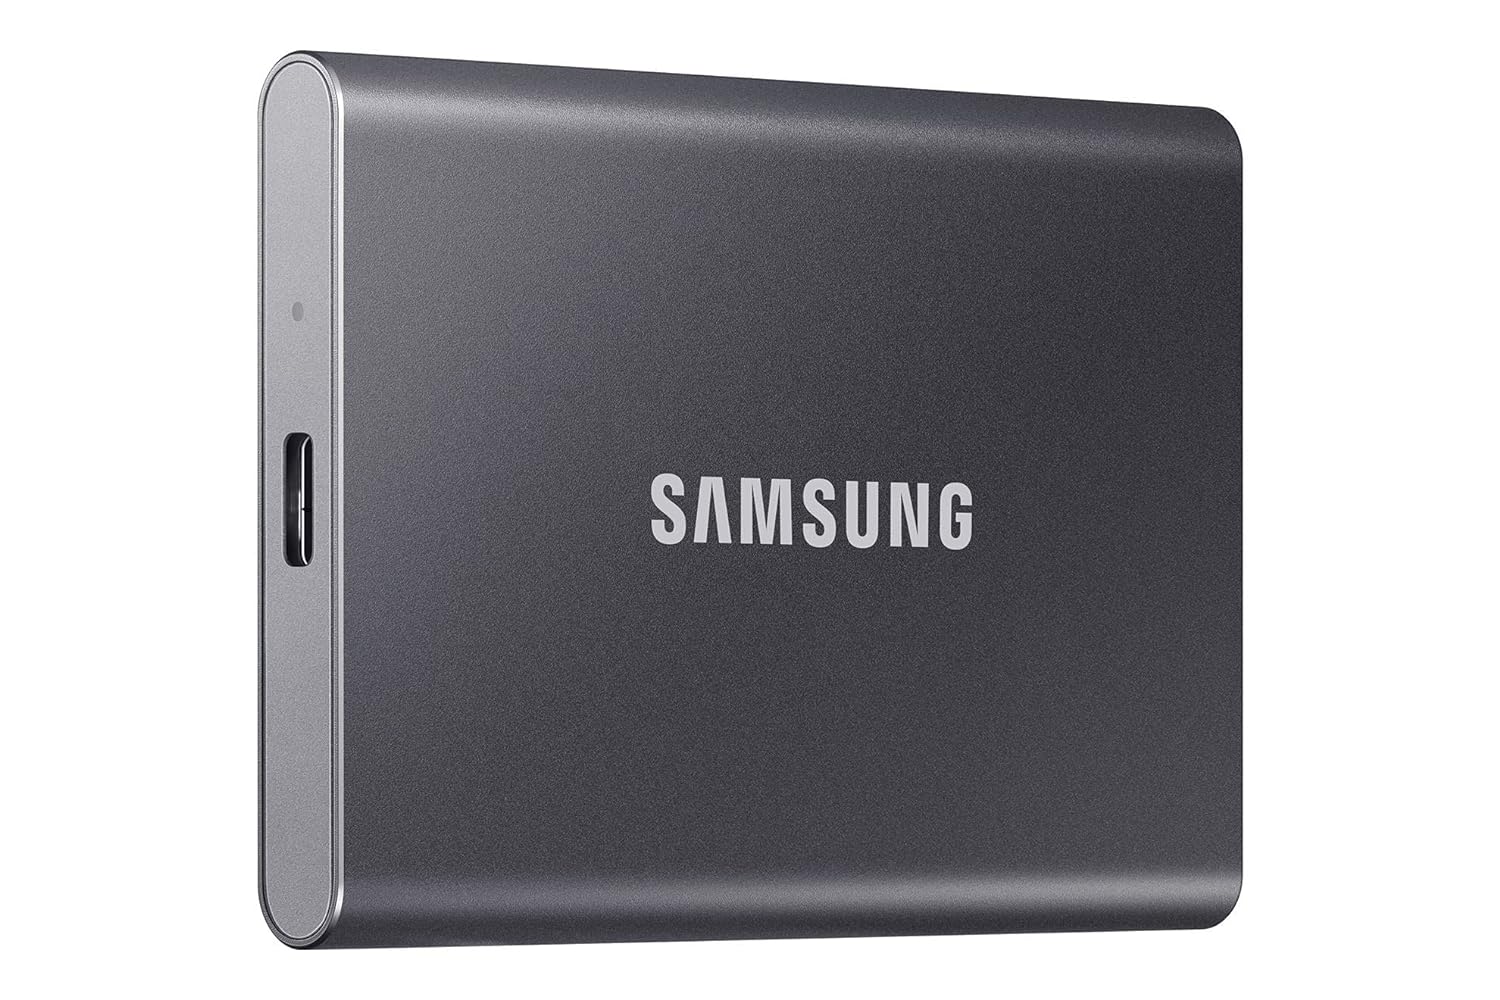 Samsung T7 500GB External SSD - USB 3.2 Gen.2, 1,050MB/sec Read, 1,000MB/sec Write